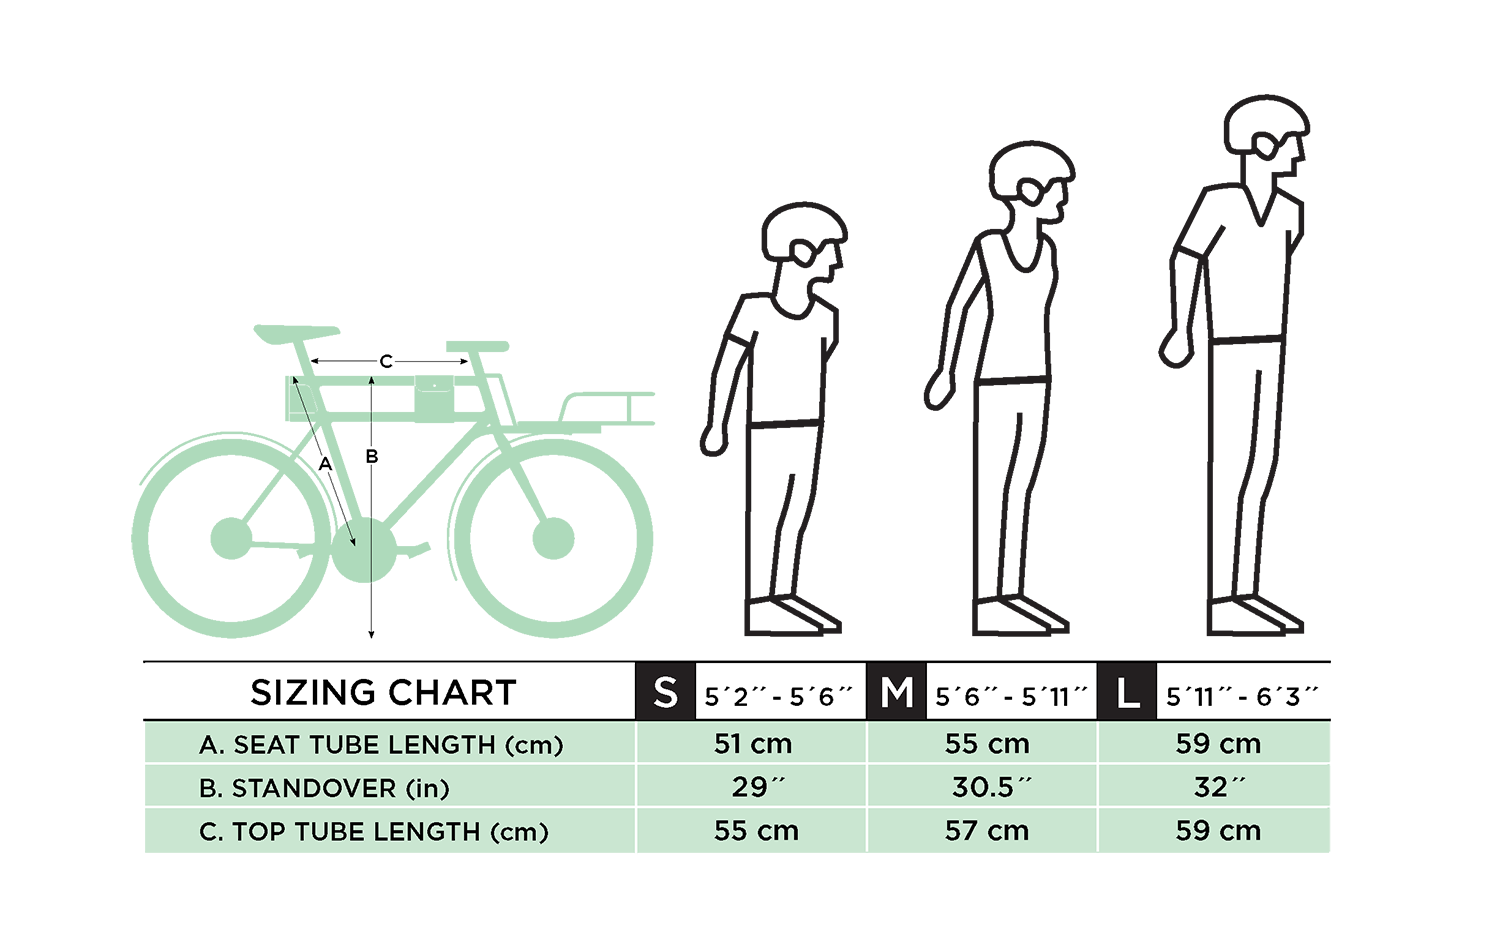 Рост 170 какой велосипед. Ростовка рамы велосипеда по росту таблица. Размер горного велосипеда по росту таблица для женщин. Размер рамы велосипеда по росту таблица для детей. Рамы велосипедов по росту таблица.